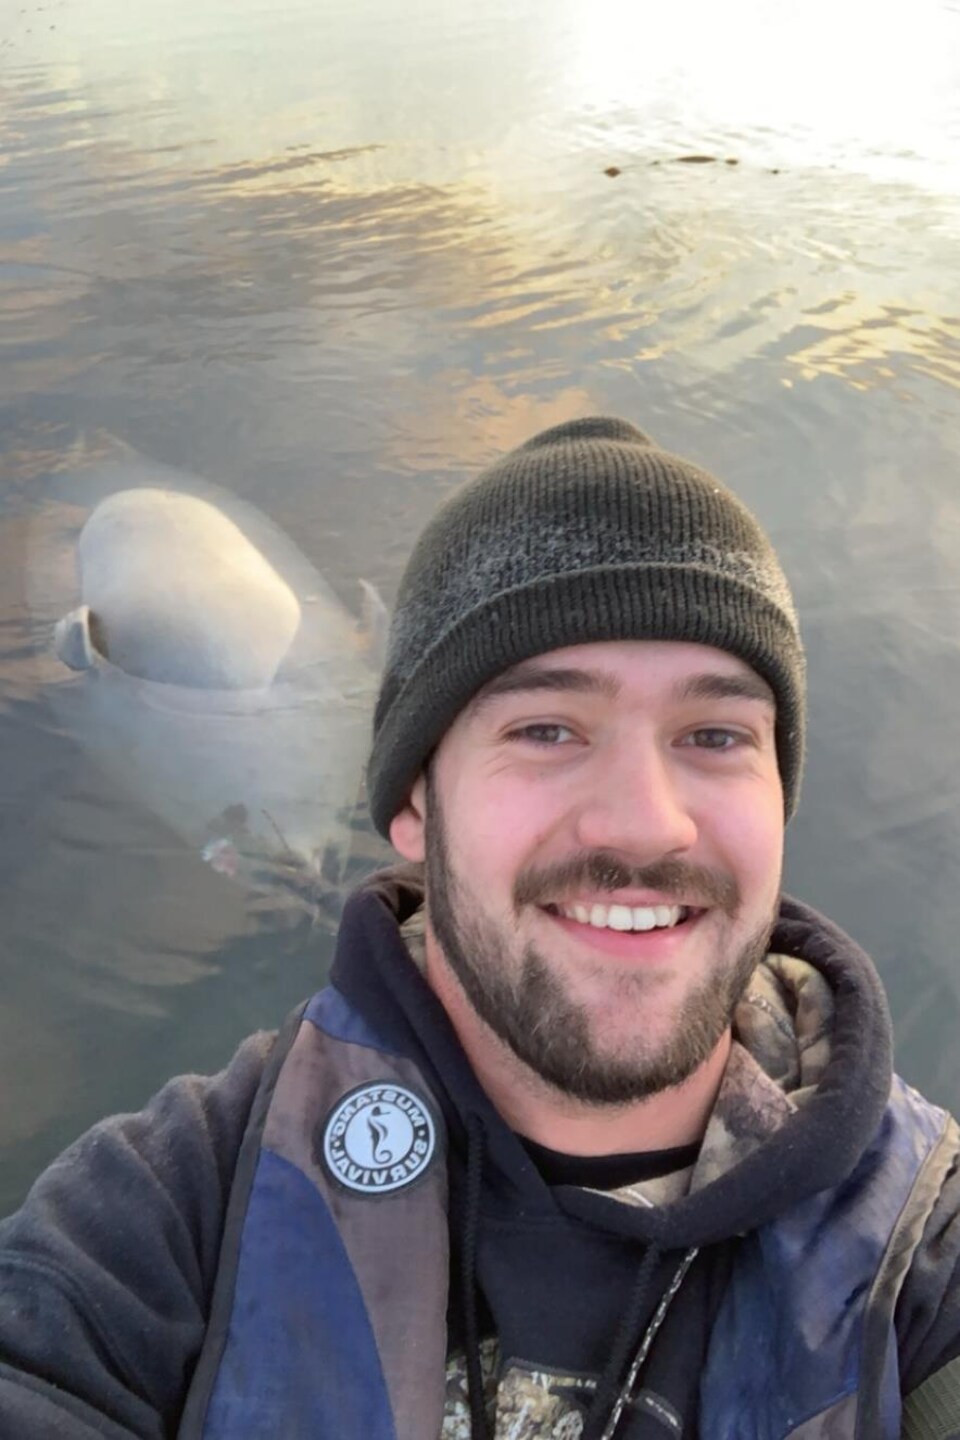 Pier-Olivier Leblanc sourit à la caméra. Derrière lui, une carcasse de phoque flotte à la surface de l'eau.